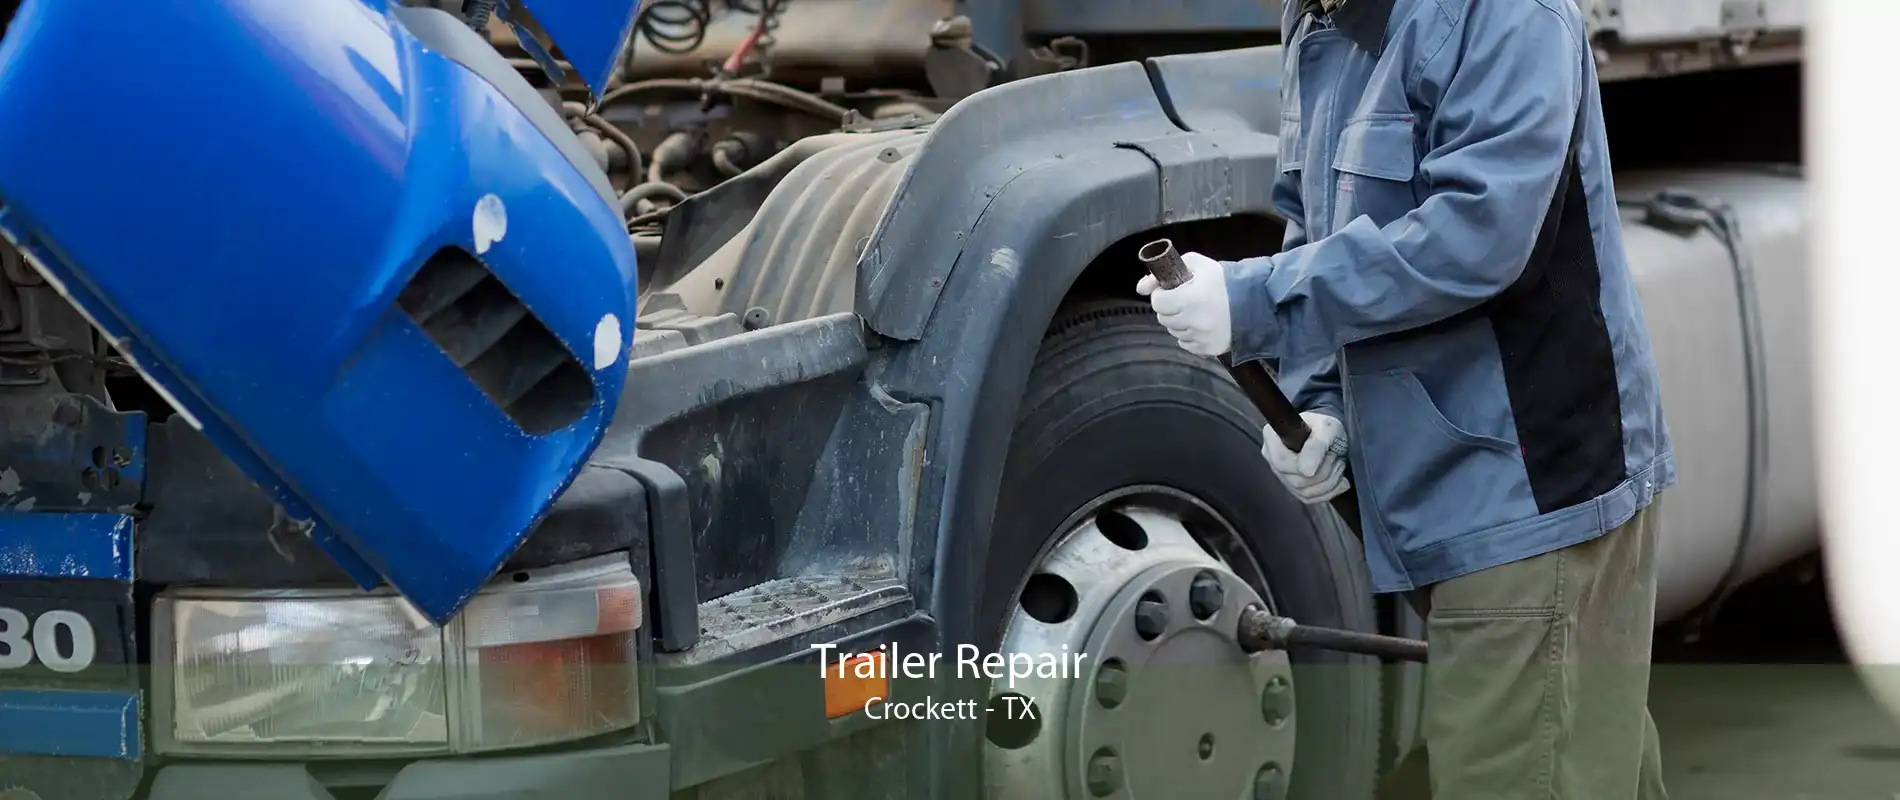 Trailer Repair Crockett - TX